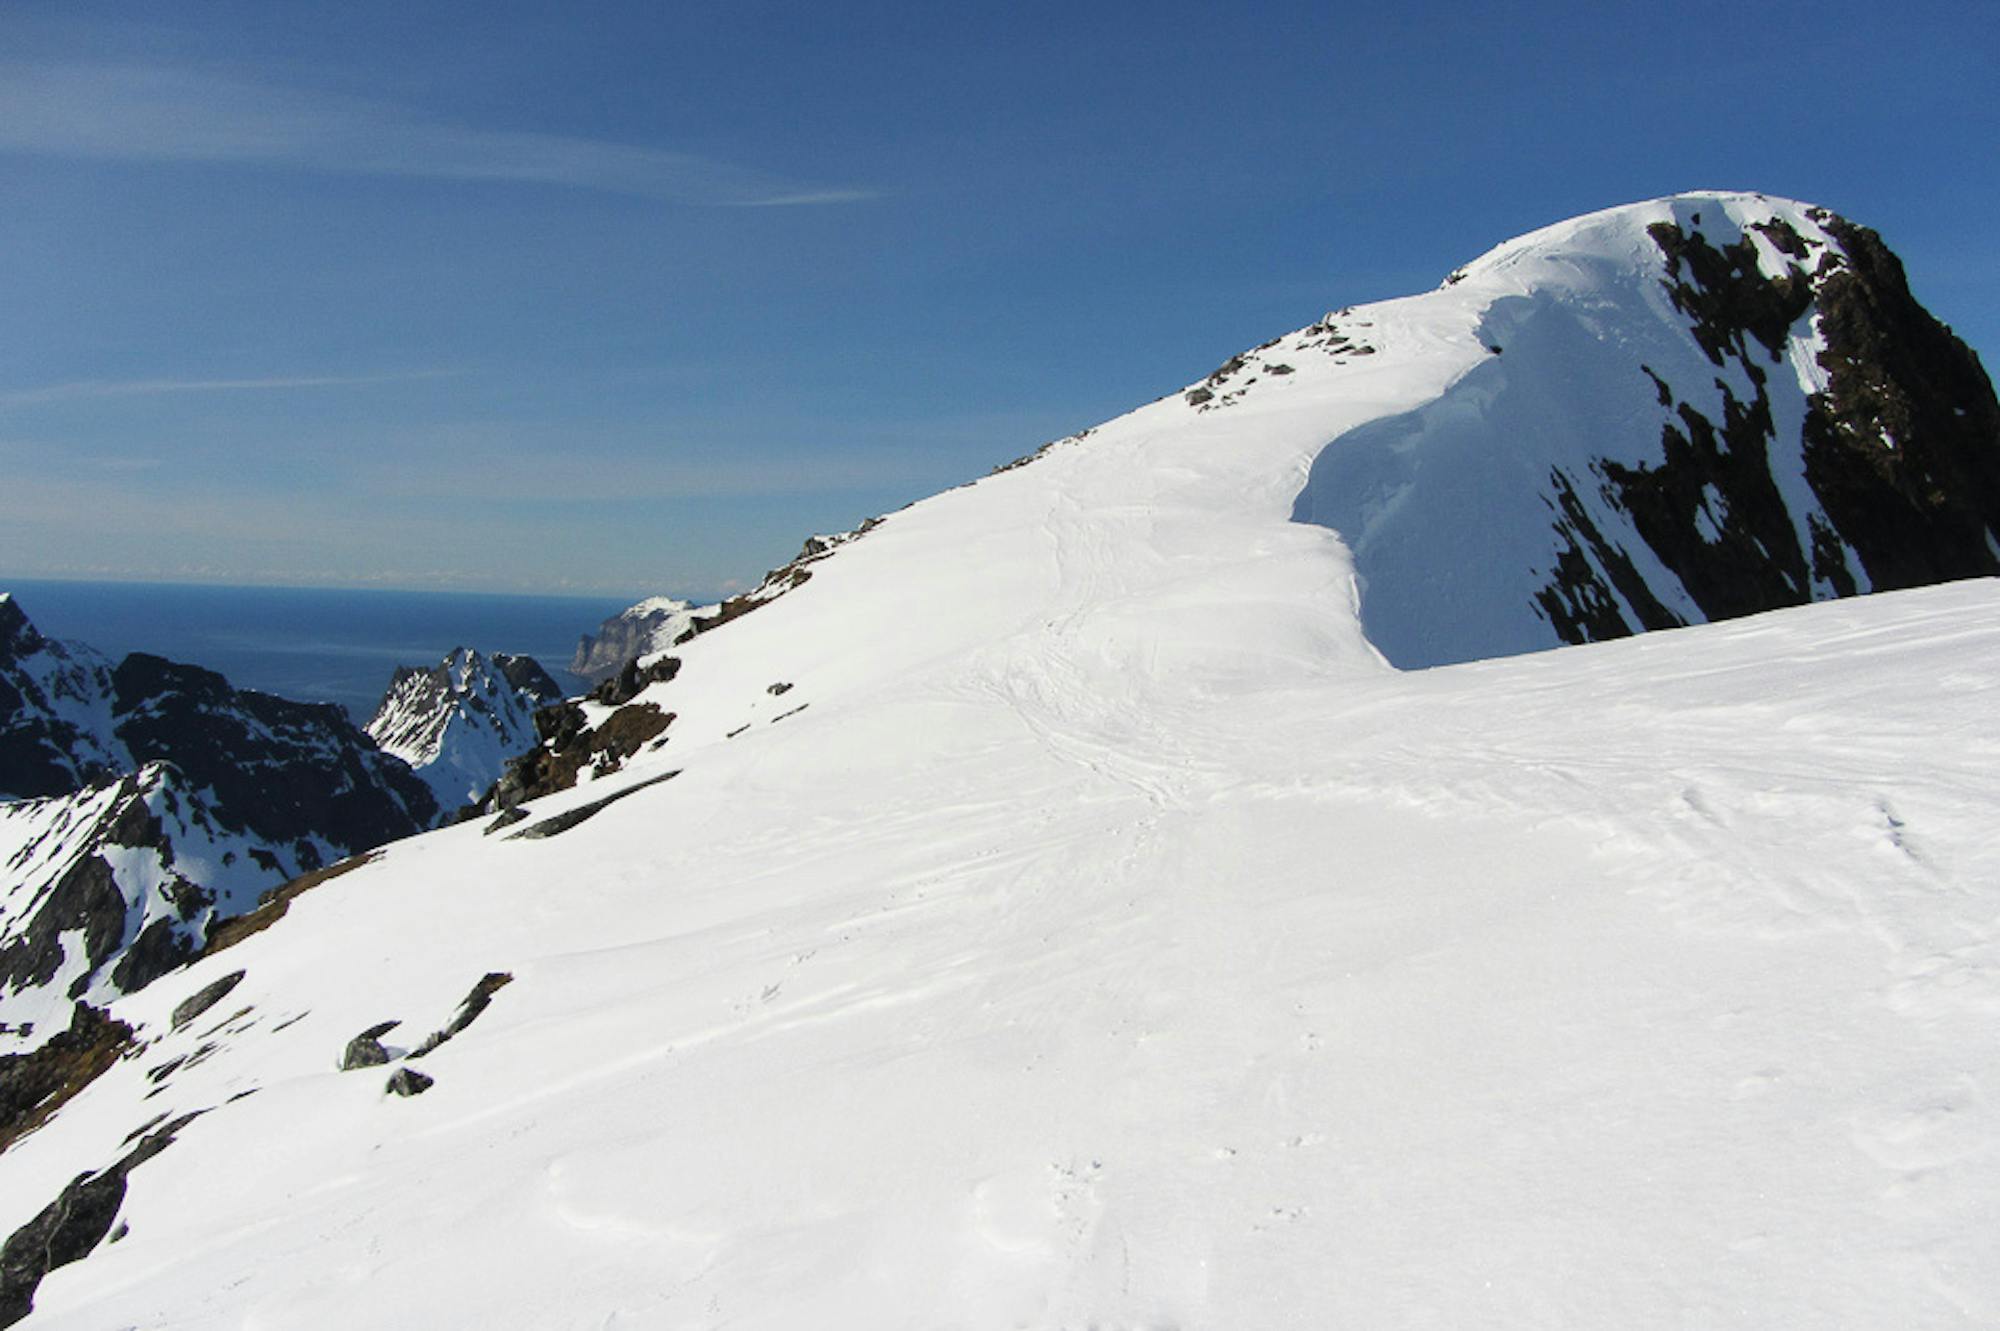 Top ridge with cornice